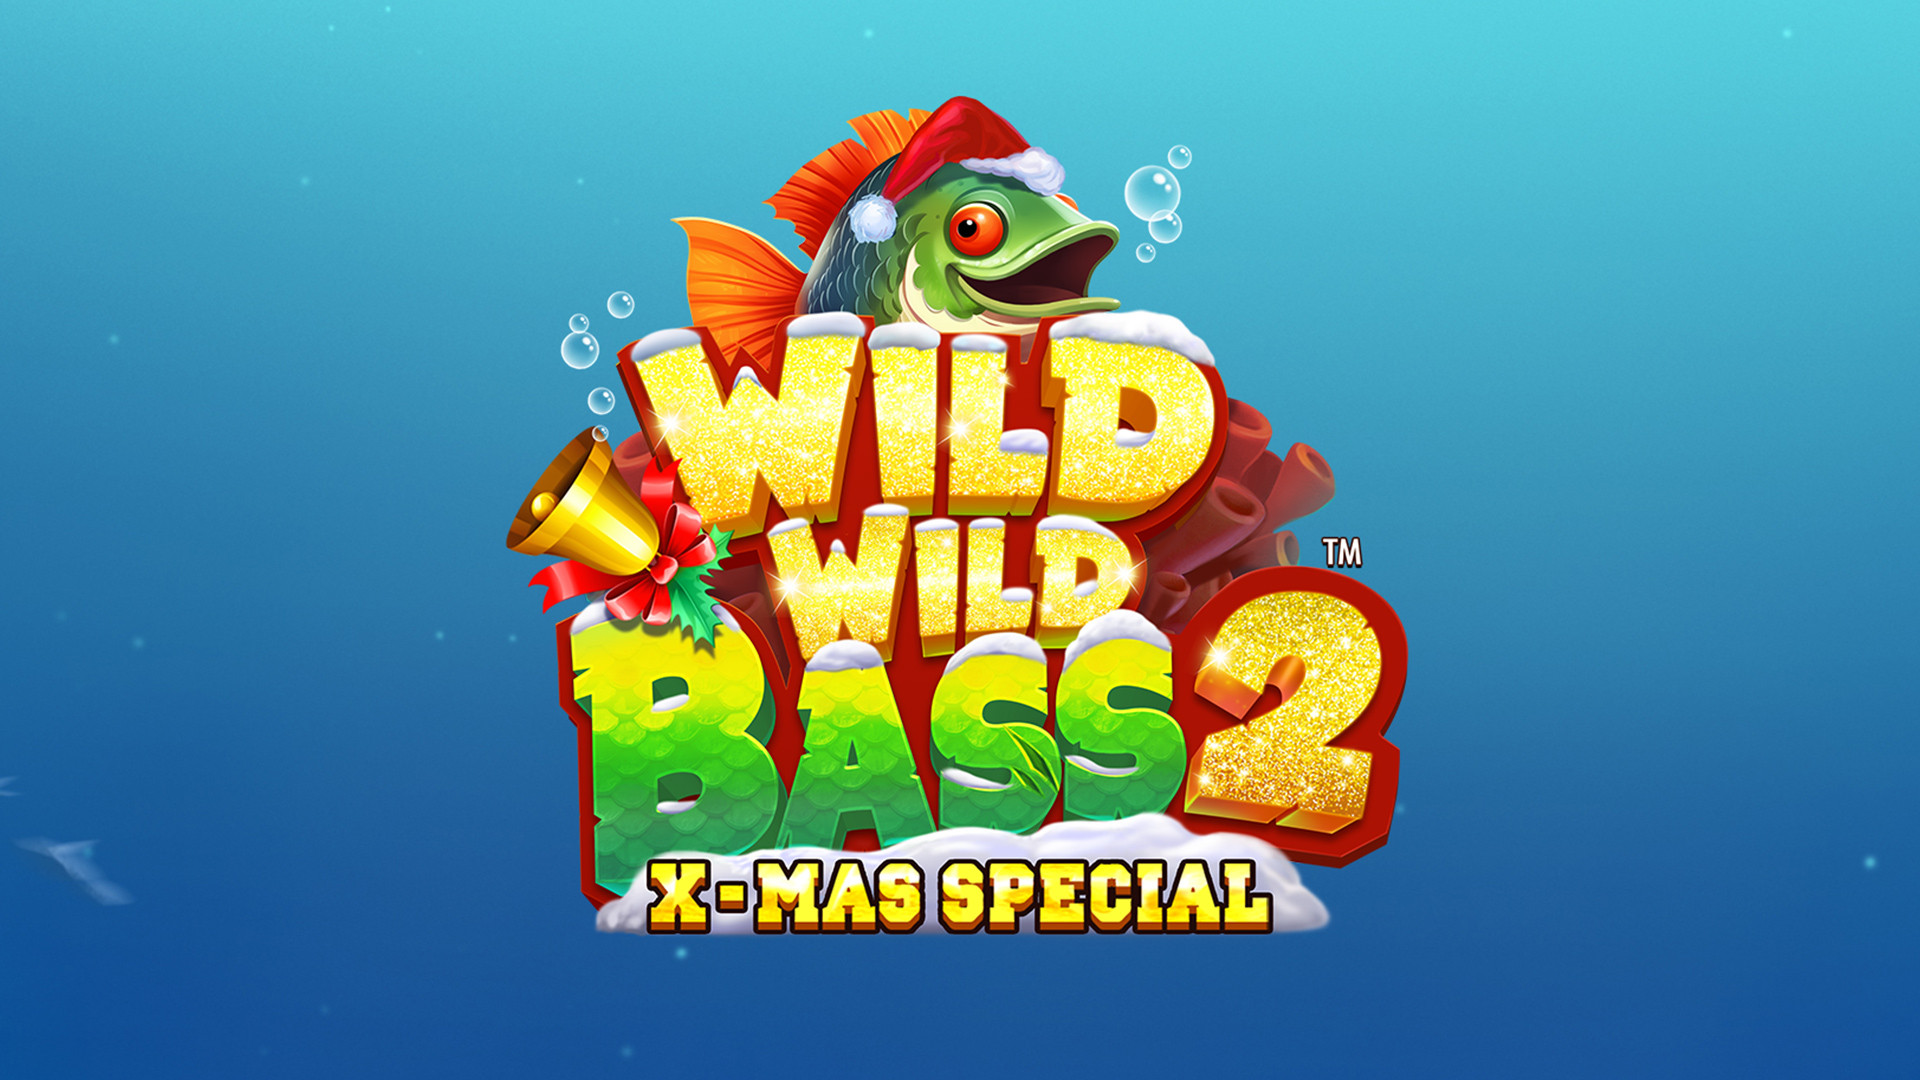 Wild Wild Bass 2 Xmas Special